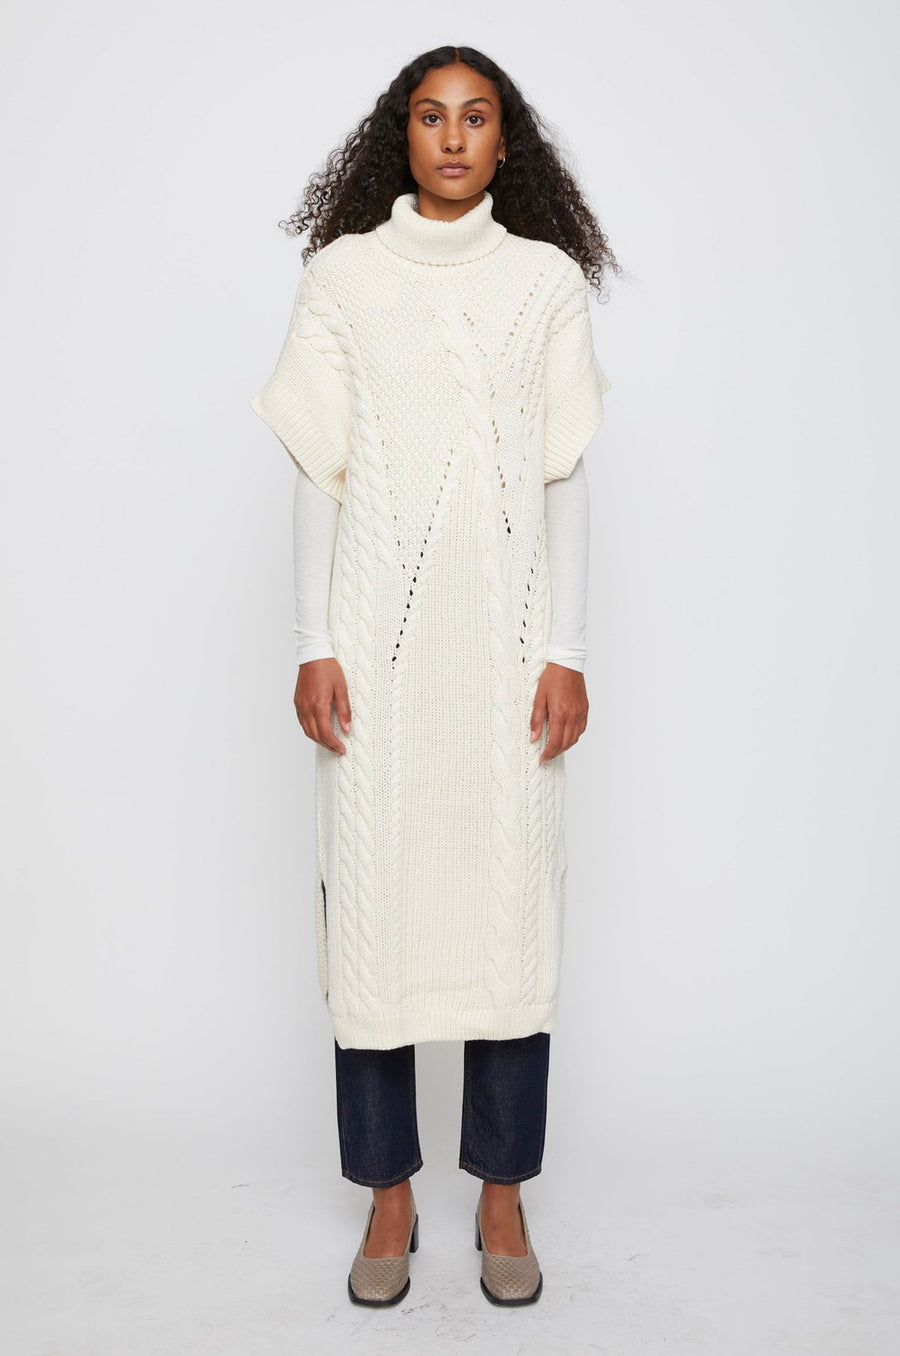 model in knit dress 